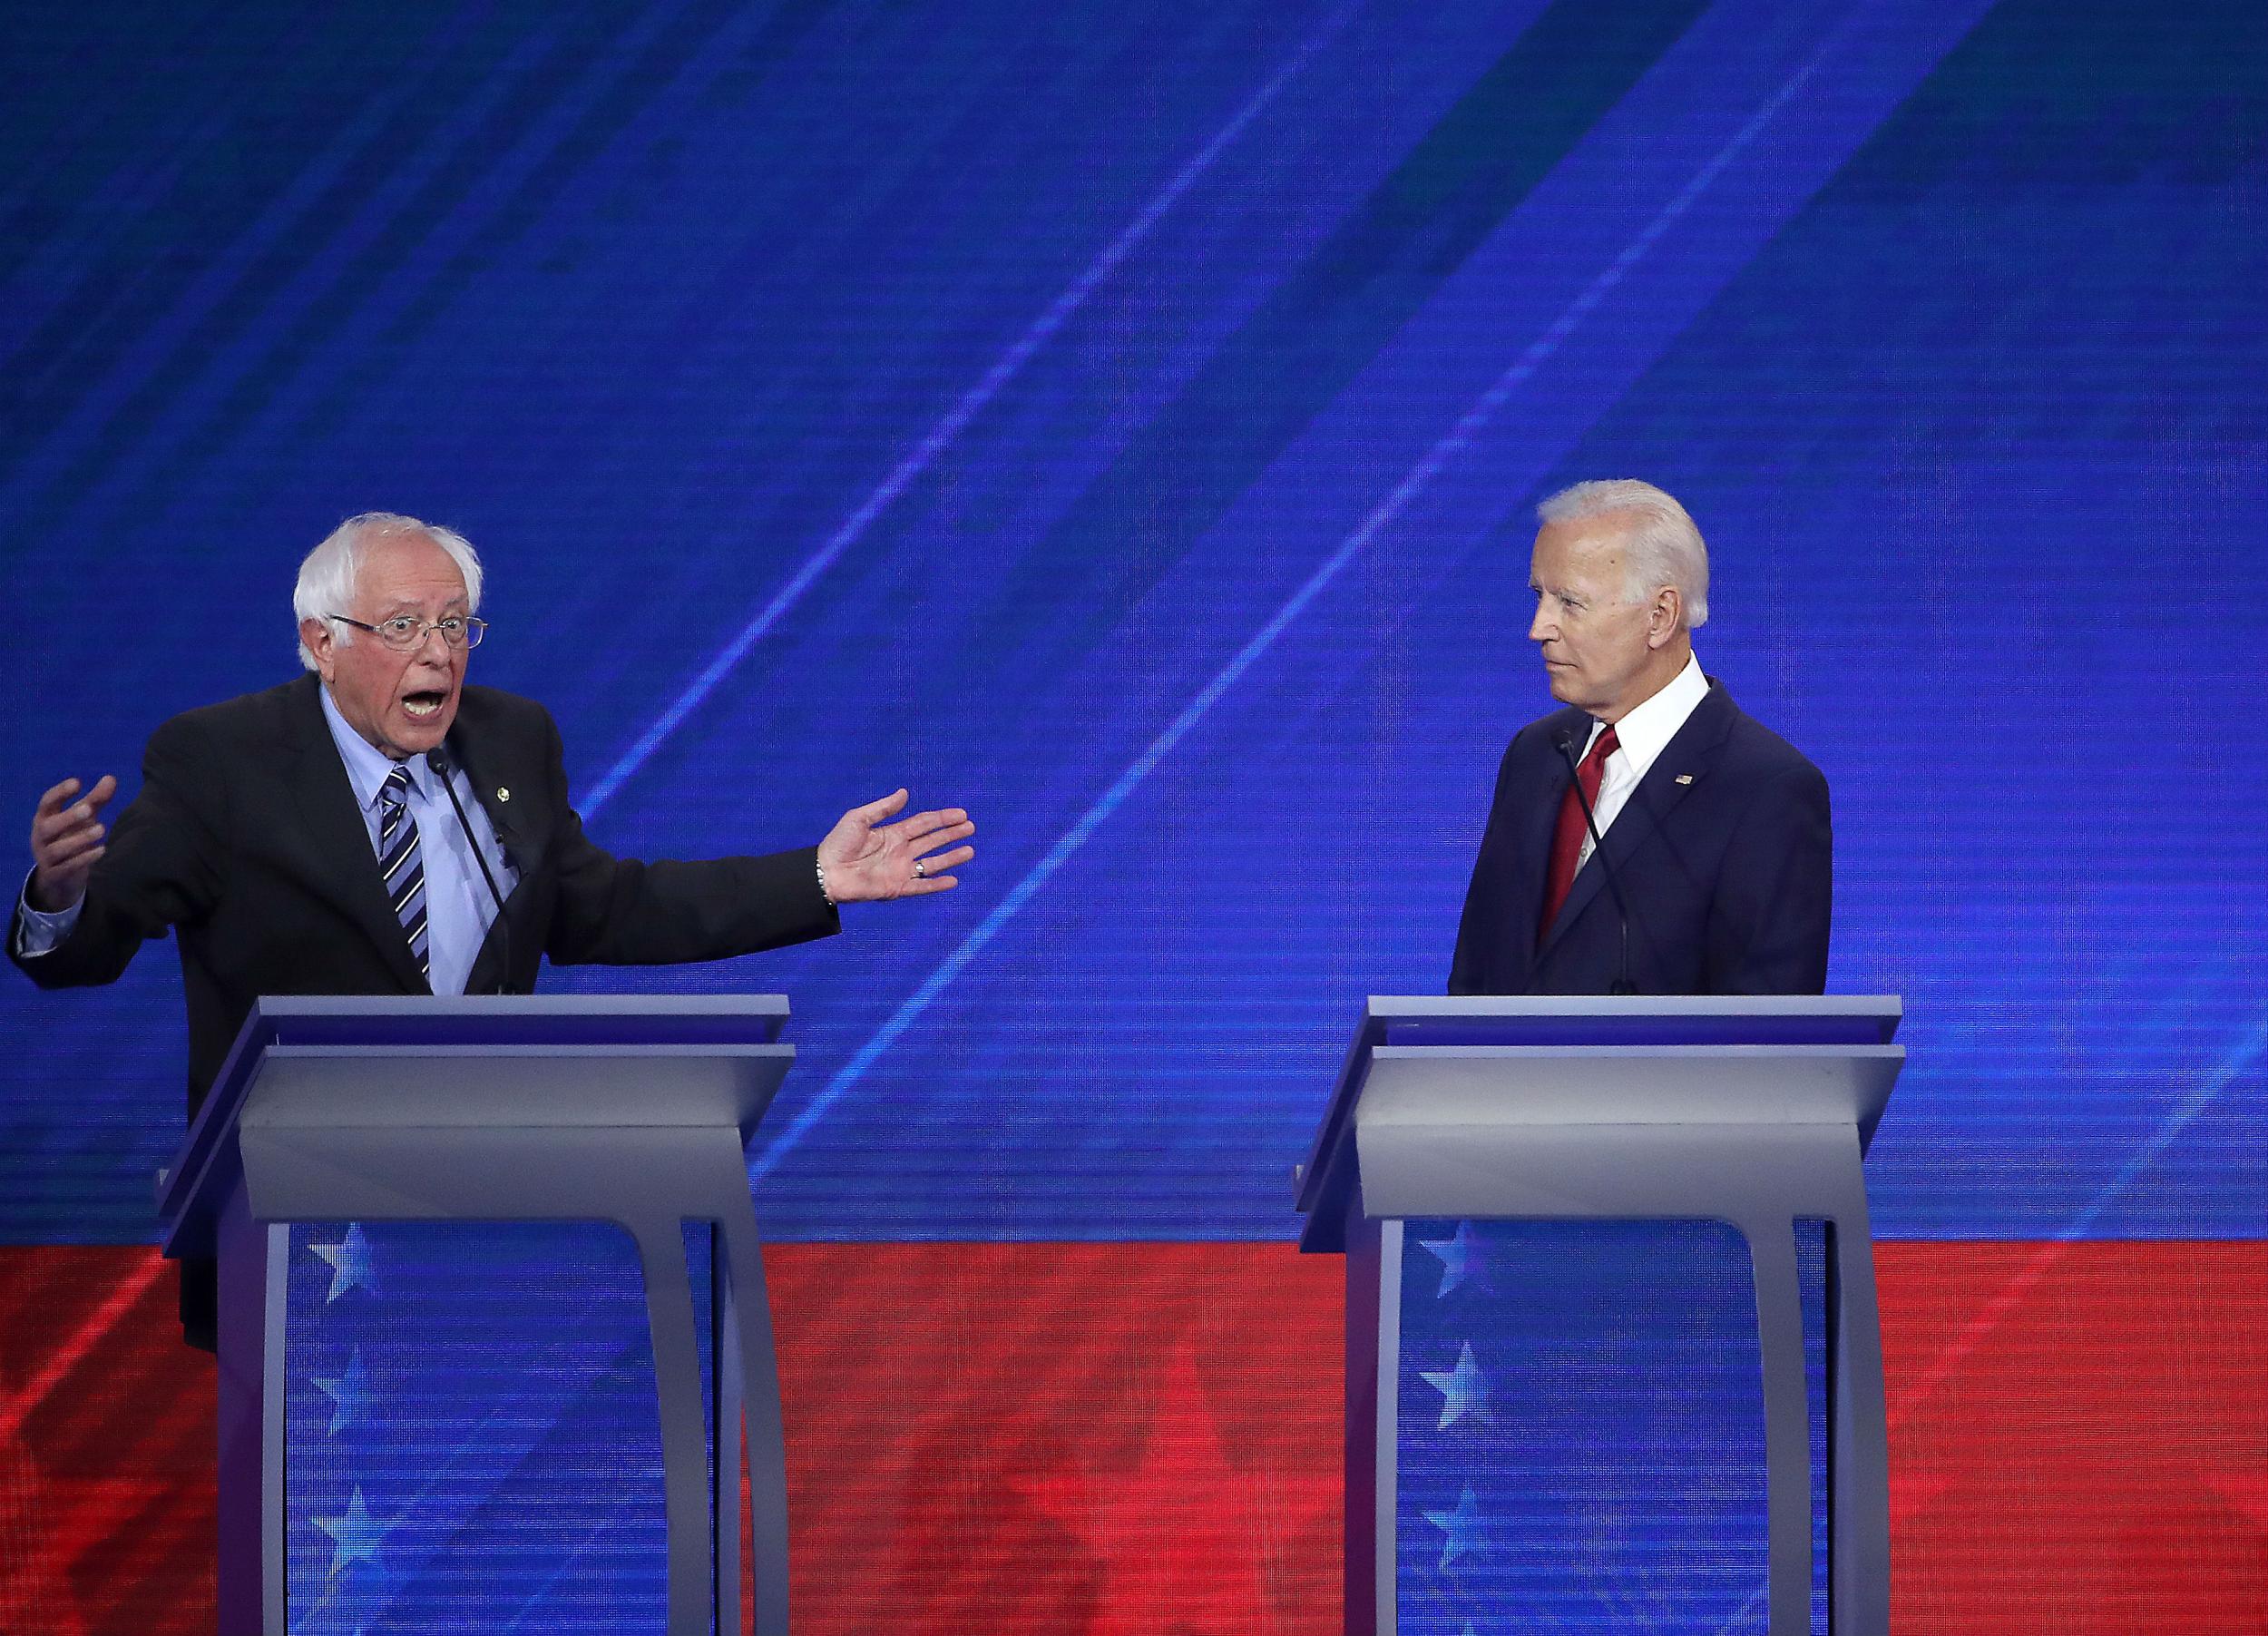 Democratic debate: Joe Biden accidentally refers to Bernie Sanders as 'the president' in heated exchange